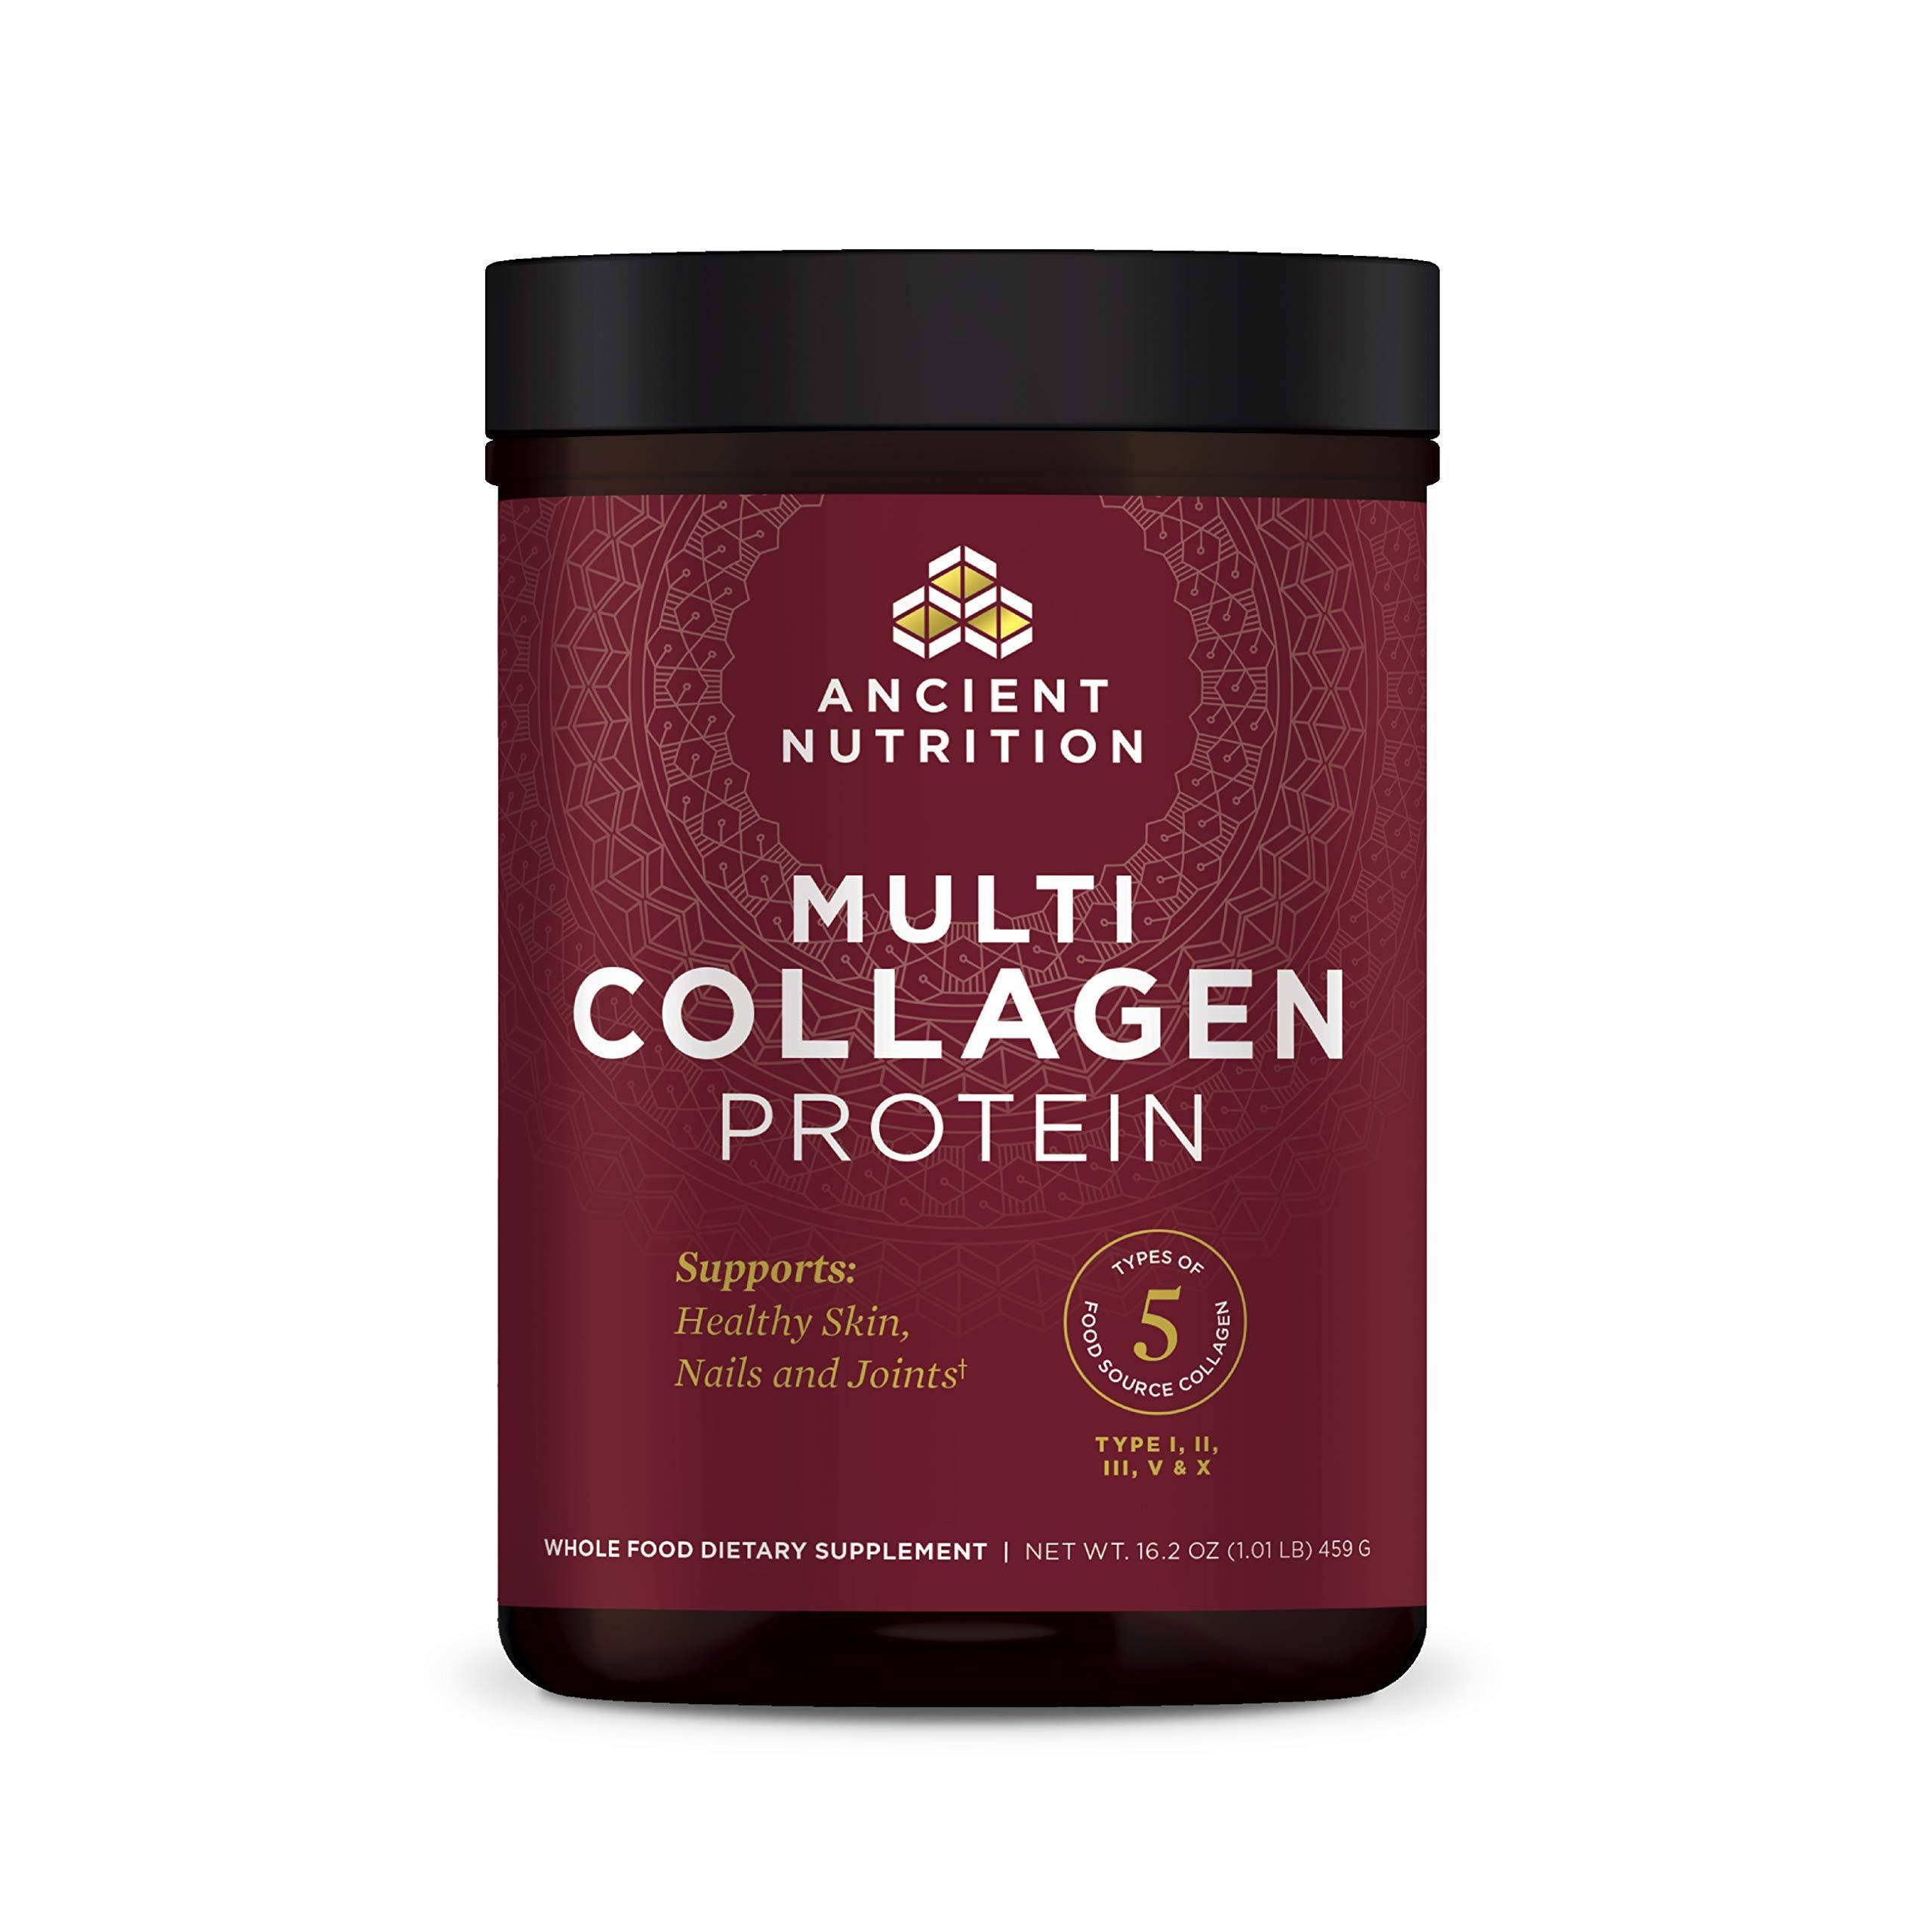 Dr. Collagen Multi Collagen Protein Powder Dietary Supplement - 1lb